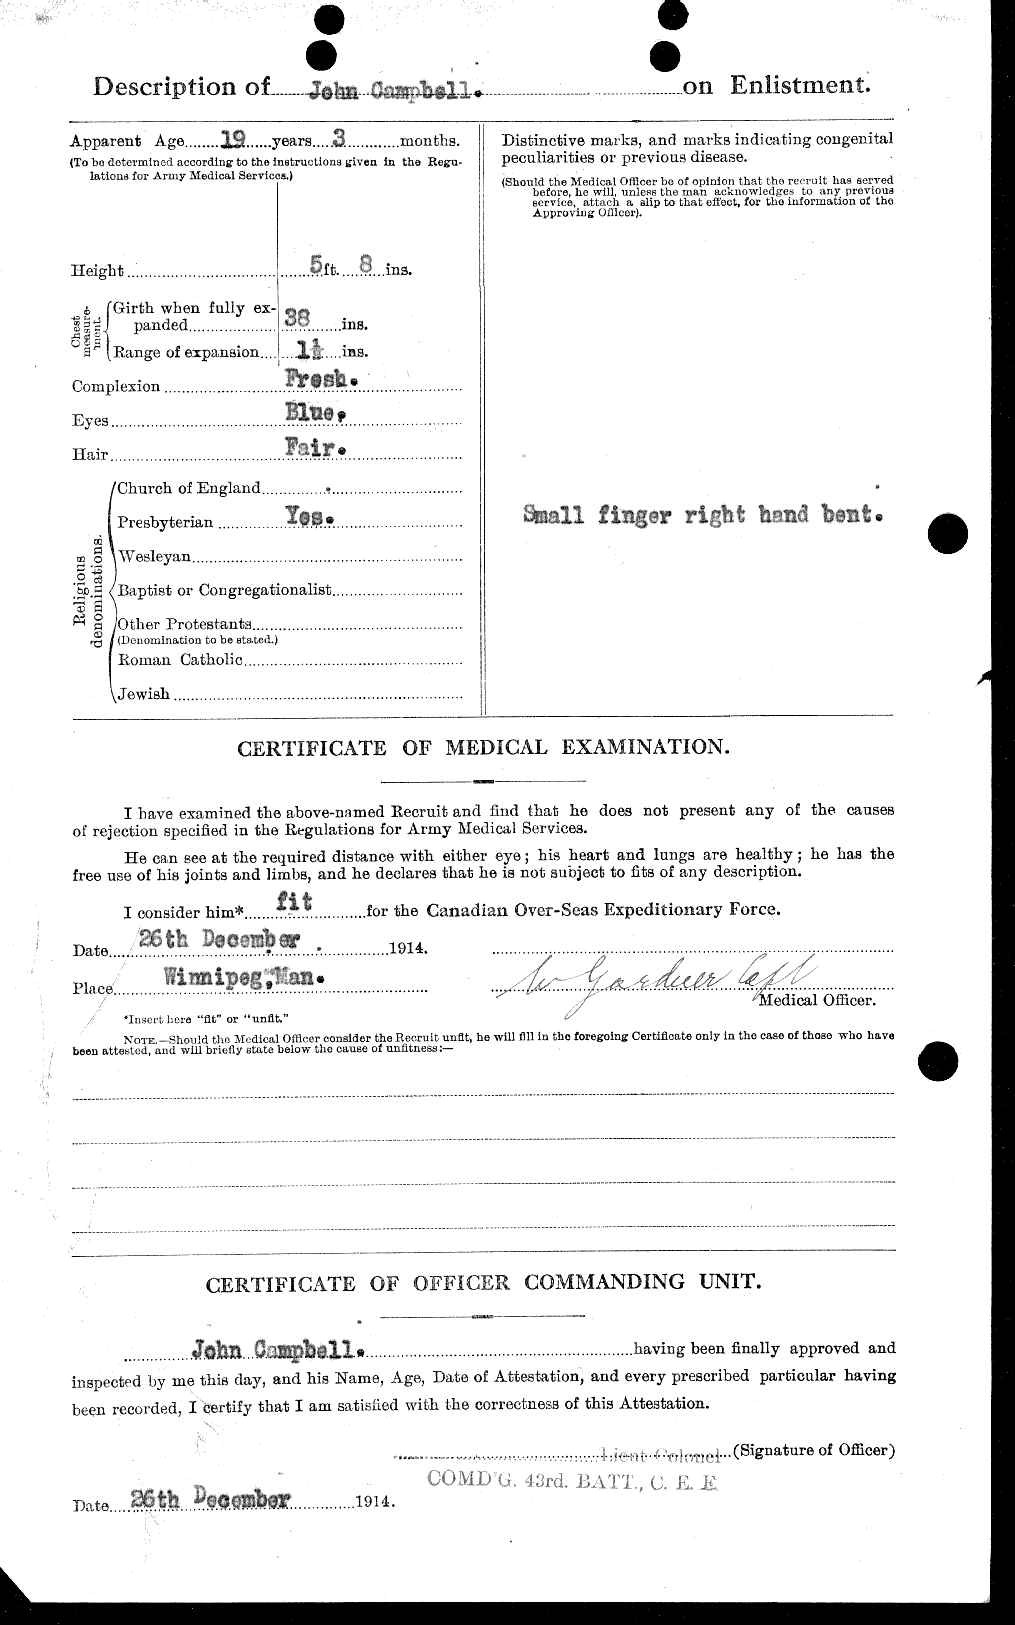 Dossiers du Personnel de la Première Guerre mondiale - CEC 006828b